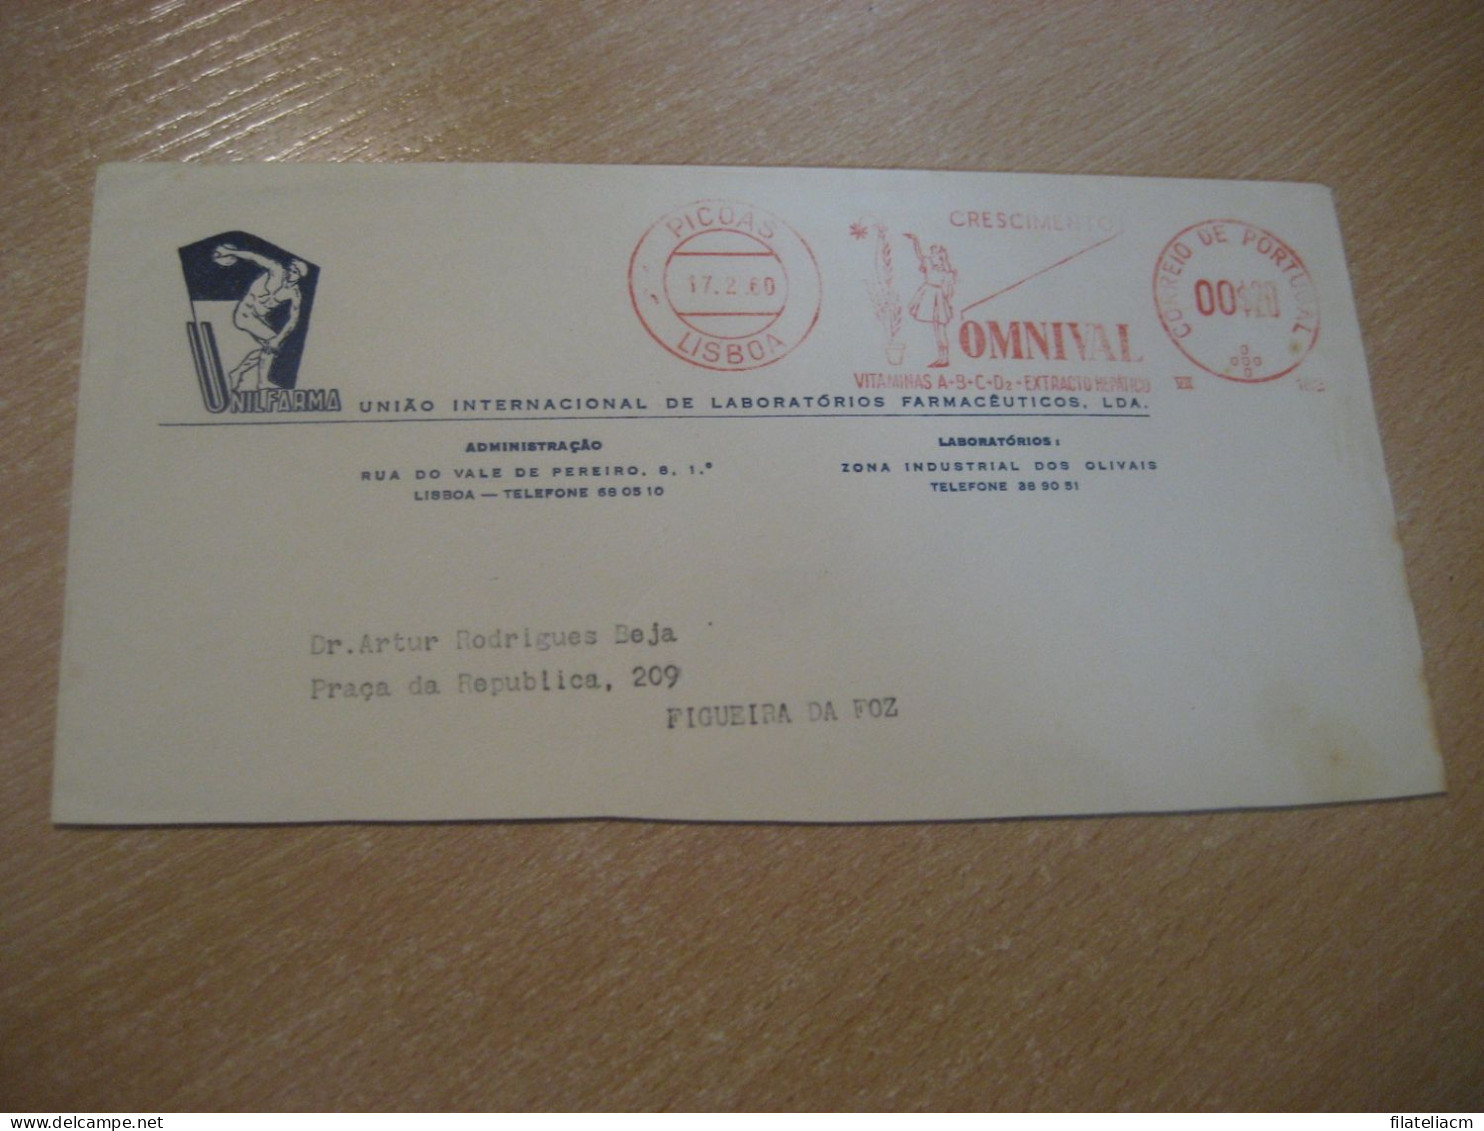 LISBOA 1960 To Figueira Da Foz OMNIVAL Vitaminas Hepatico Unilfarma Pharmacy Health Meter Mail Cancel Cut Cover PORTUGAL - Cartas & Documentos